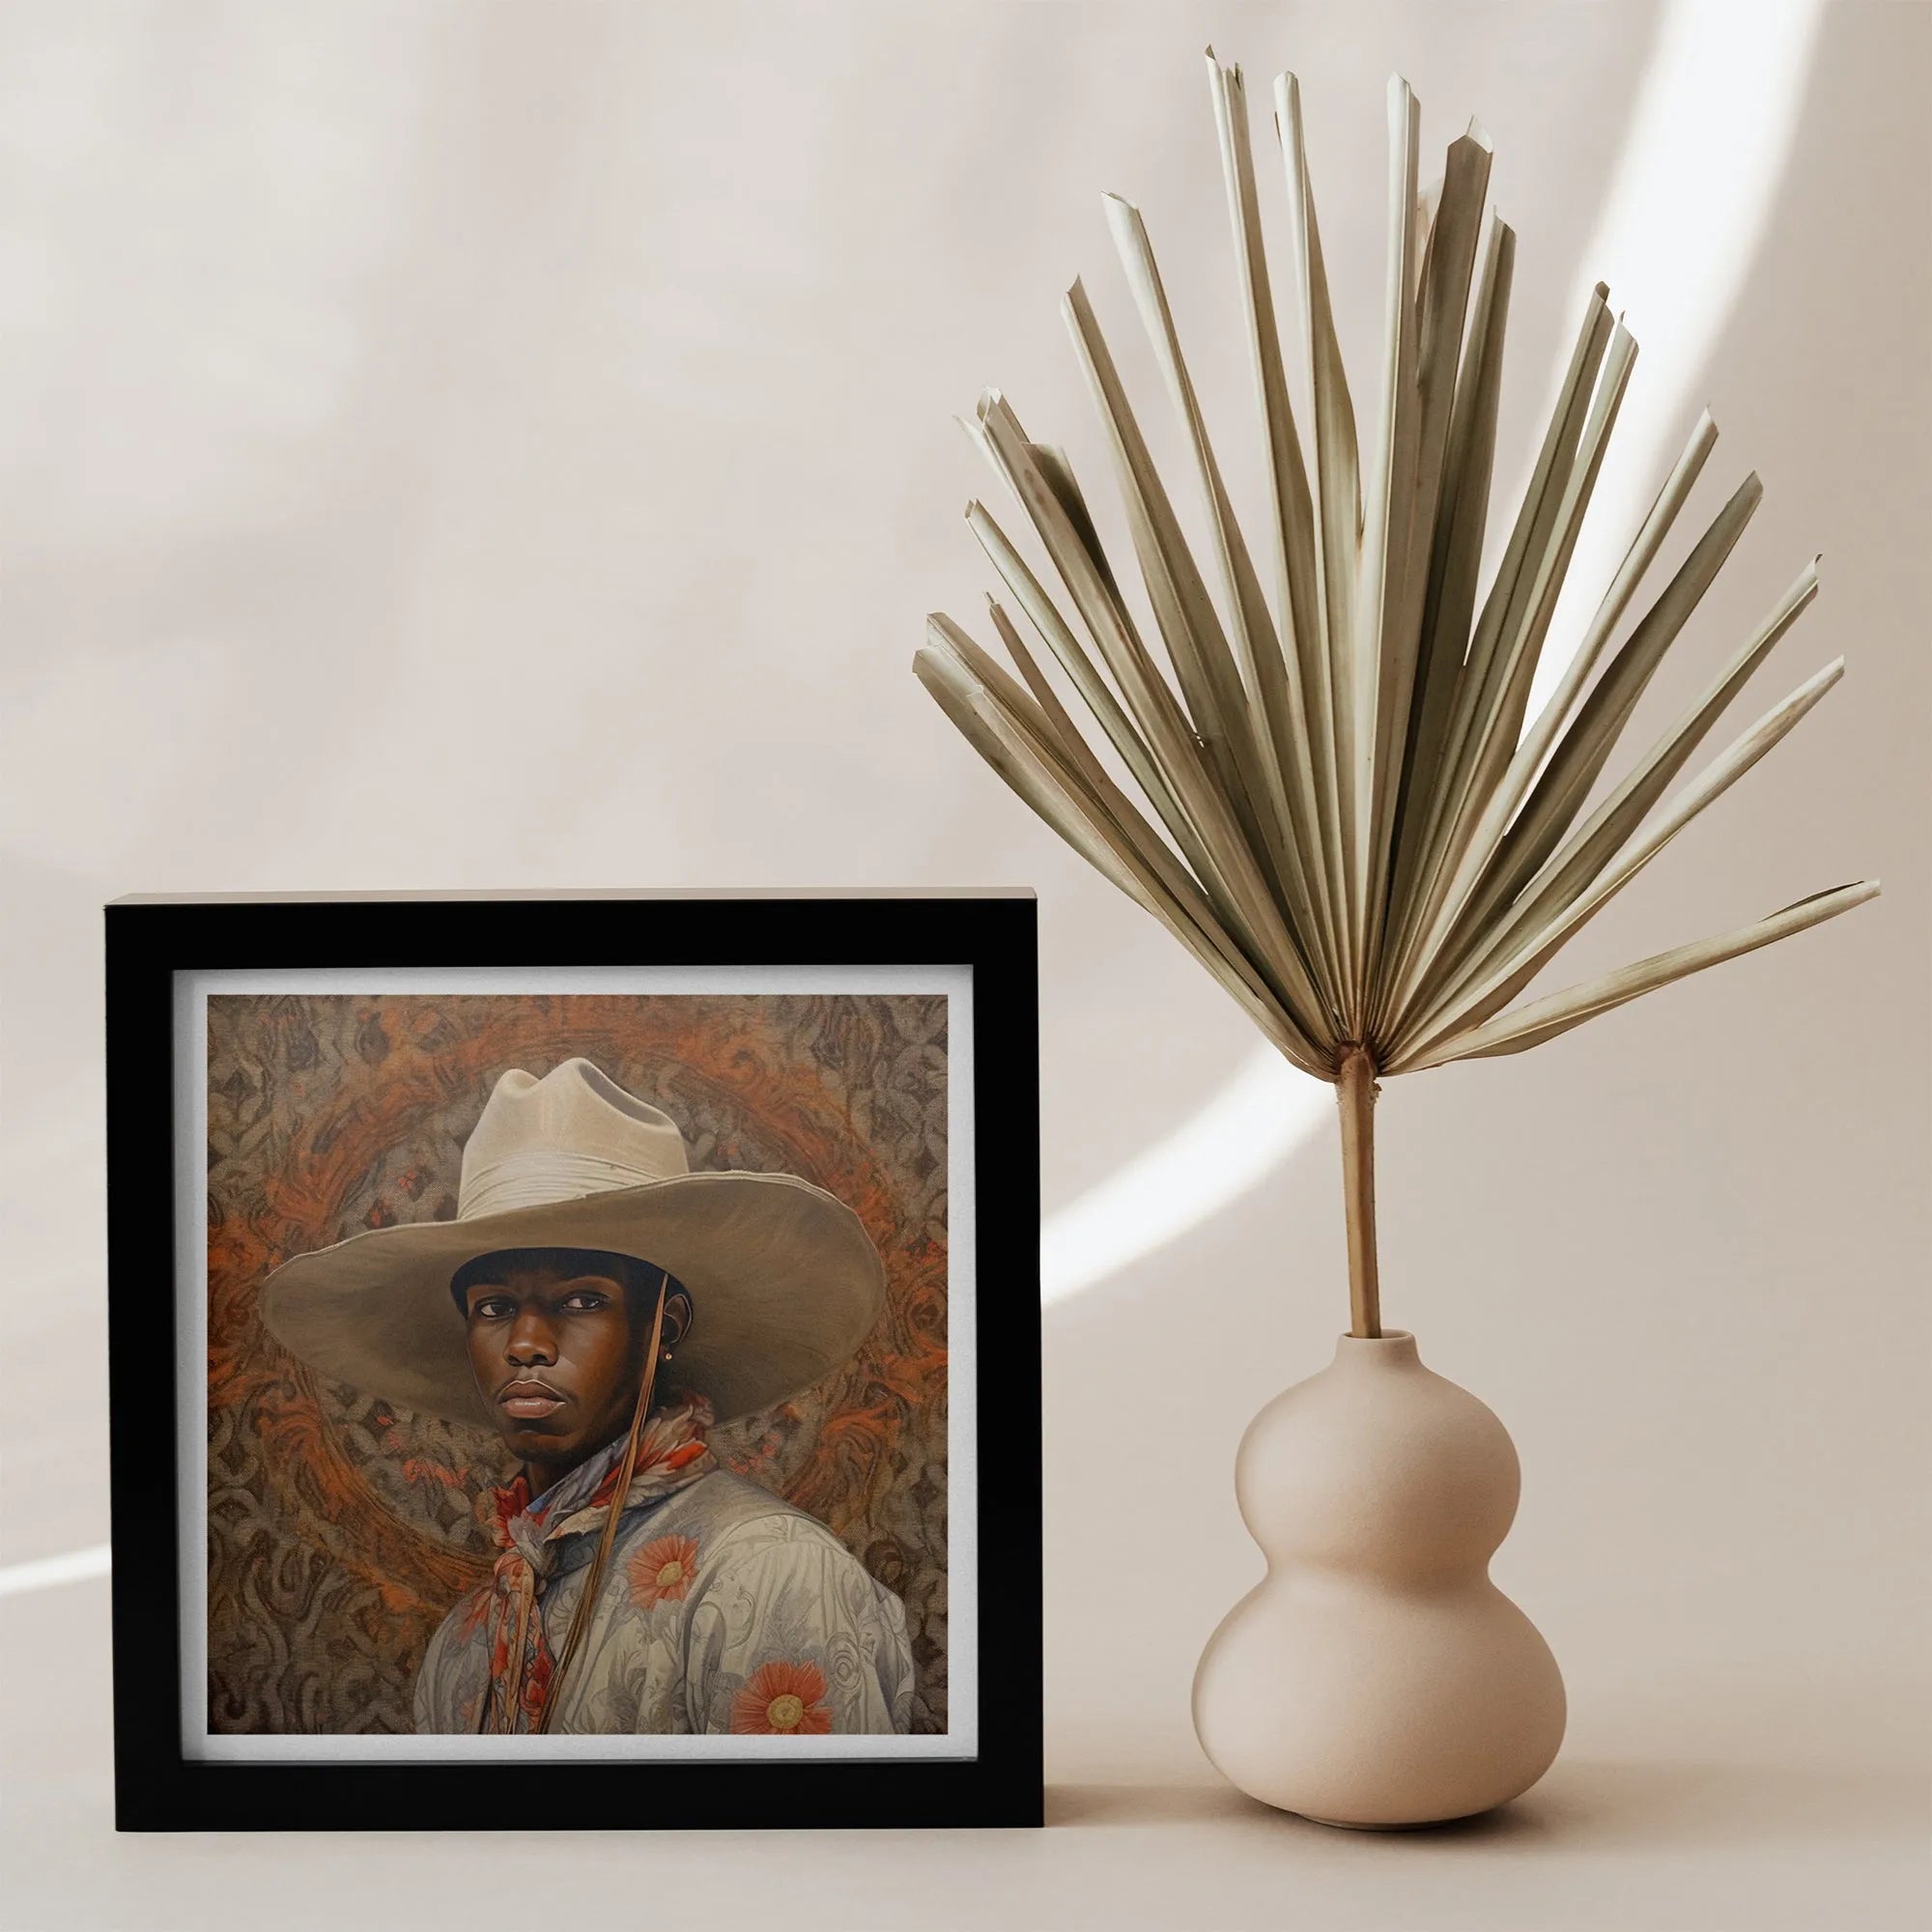 Titus - Gay Black Cowboy Dandy Aesthetic Art Print - 12’x12’ - Posters Prints & Visual Artwork - Aesthetic Art